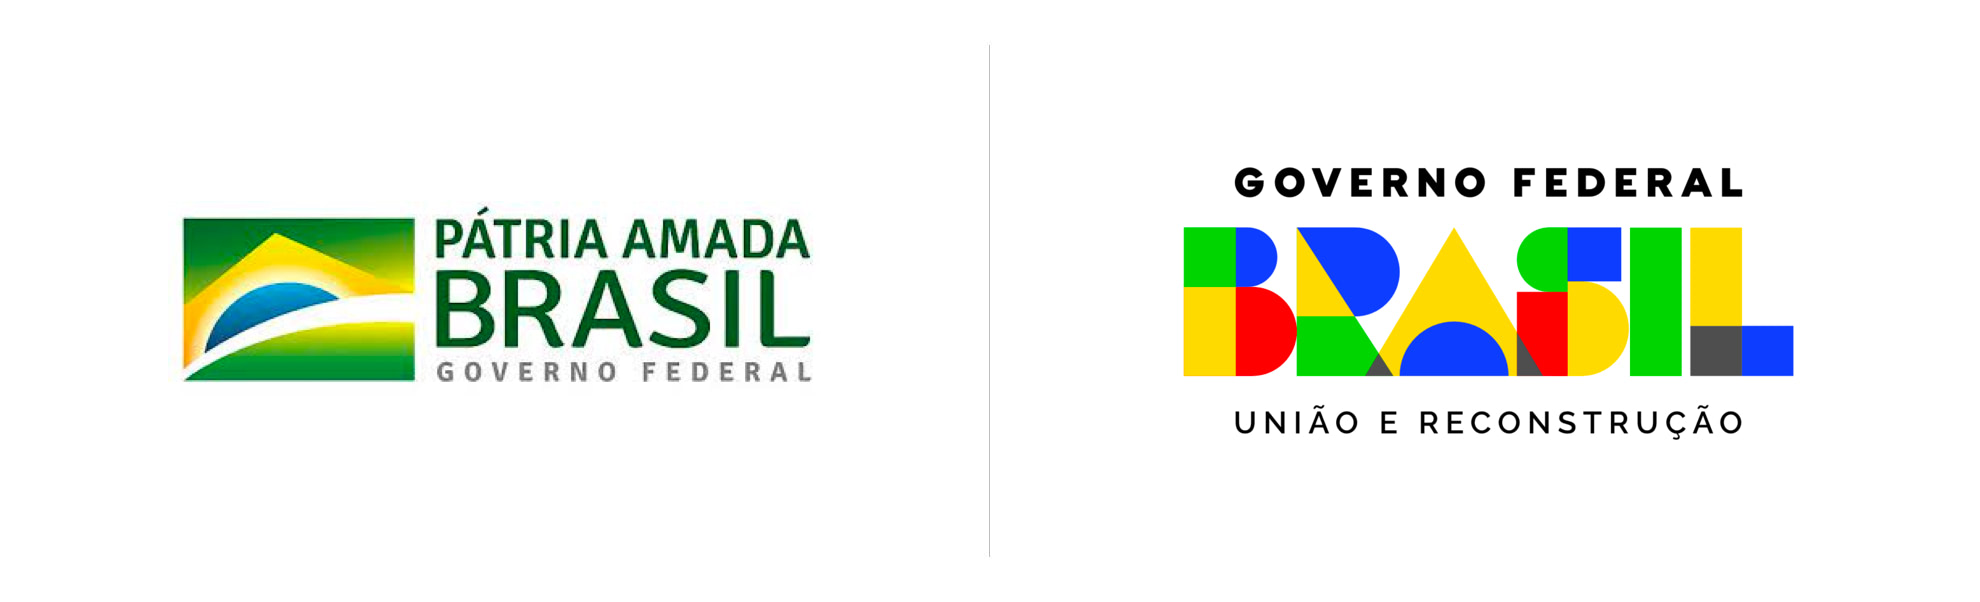 Rząd federalny Brazylii stare i nowe logo